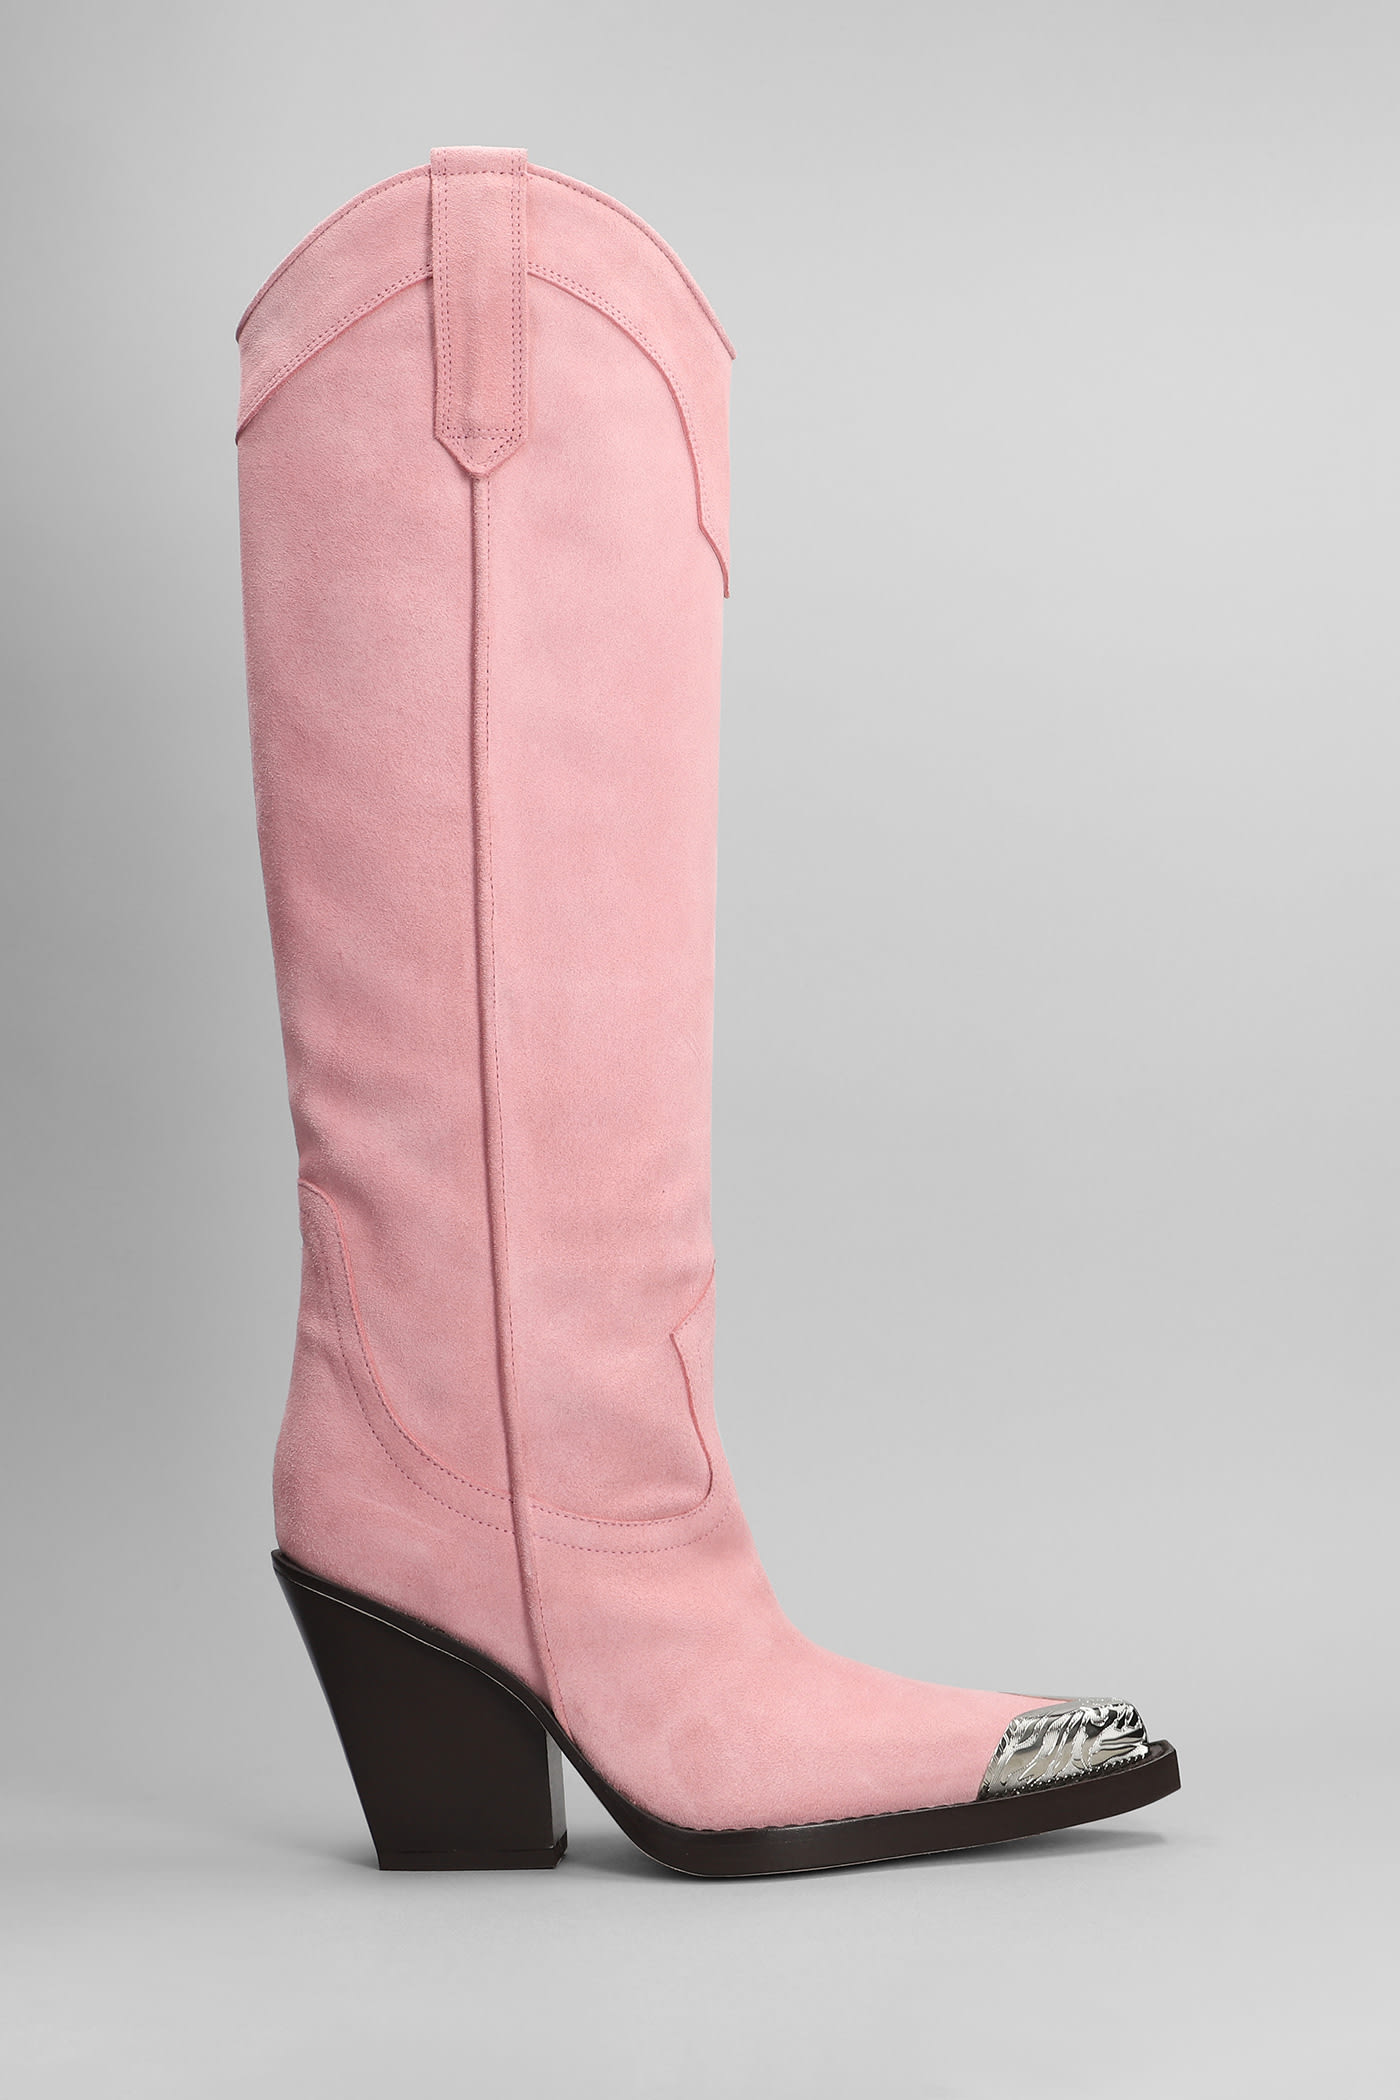 Paris Texas El Dorado Texan Boots In Rose-pink Suede